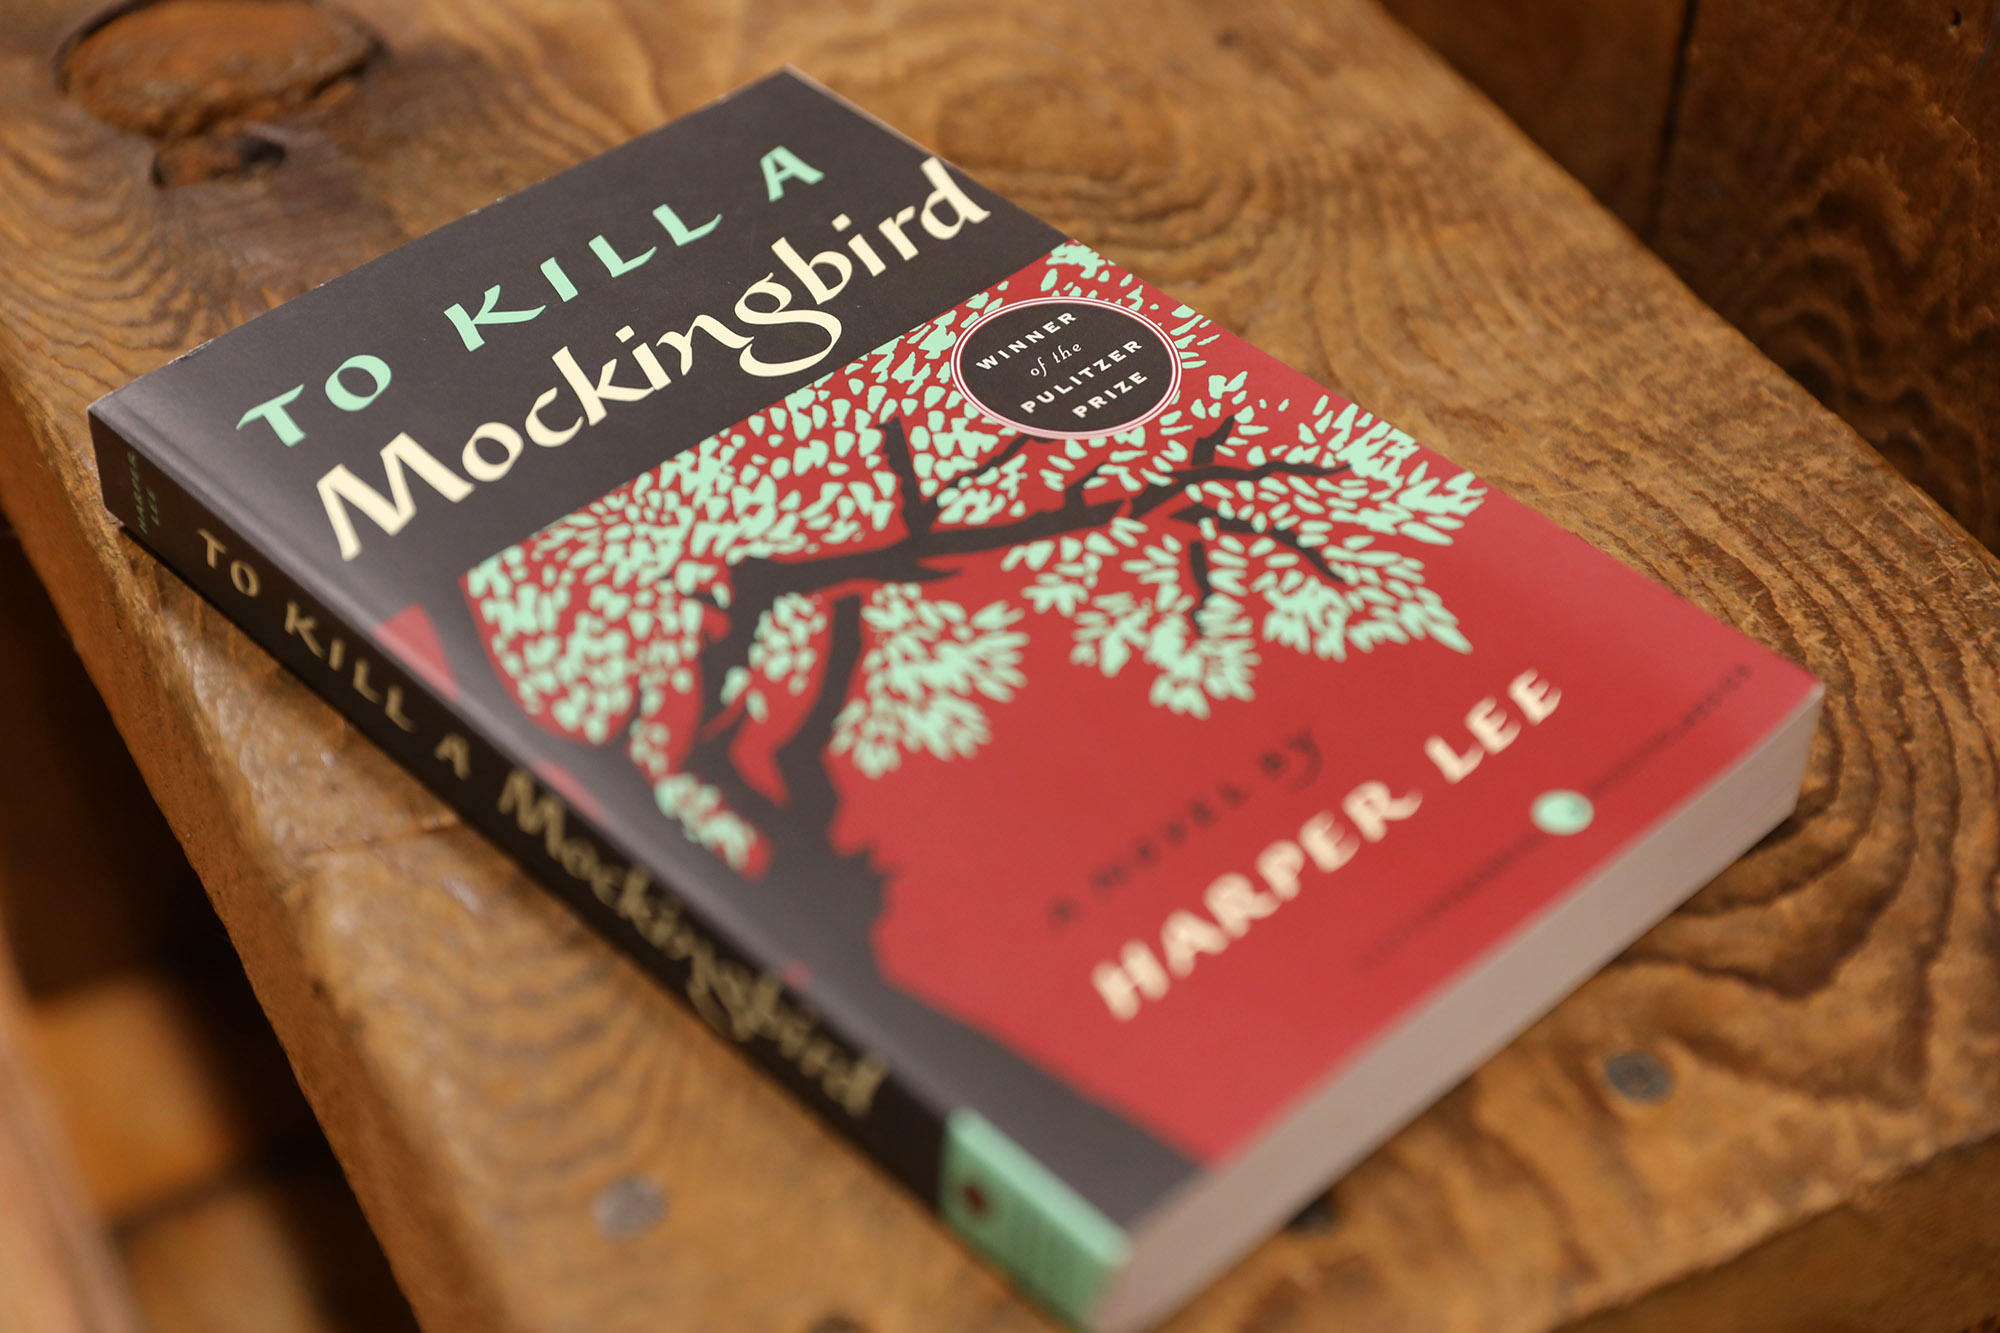 Why To Kill a Mockingbird Still Resonates Today